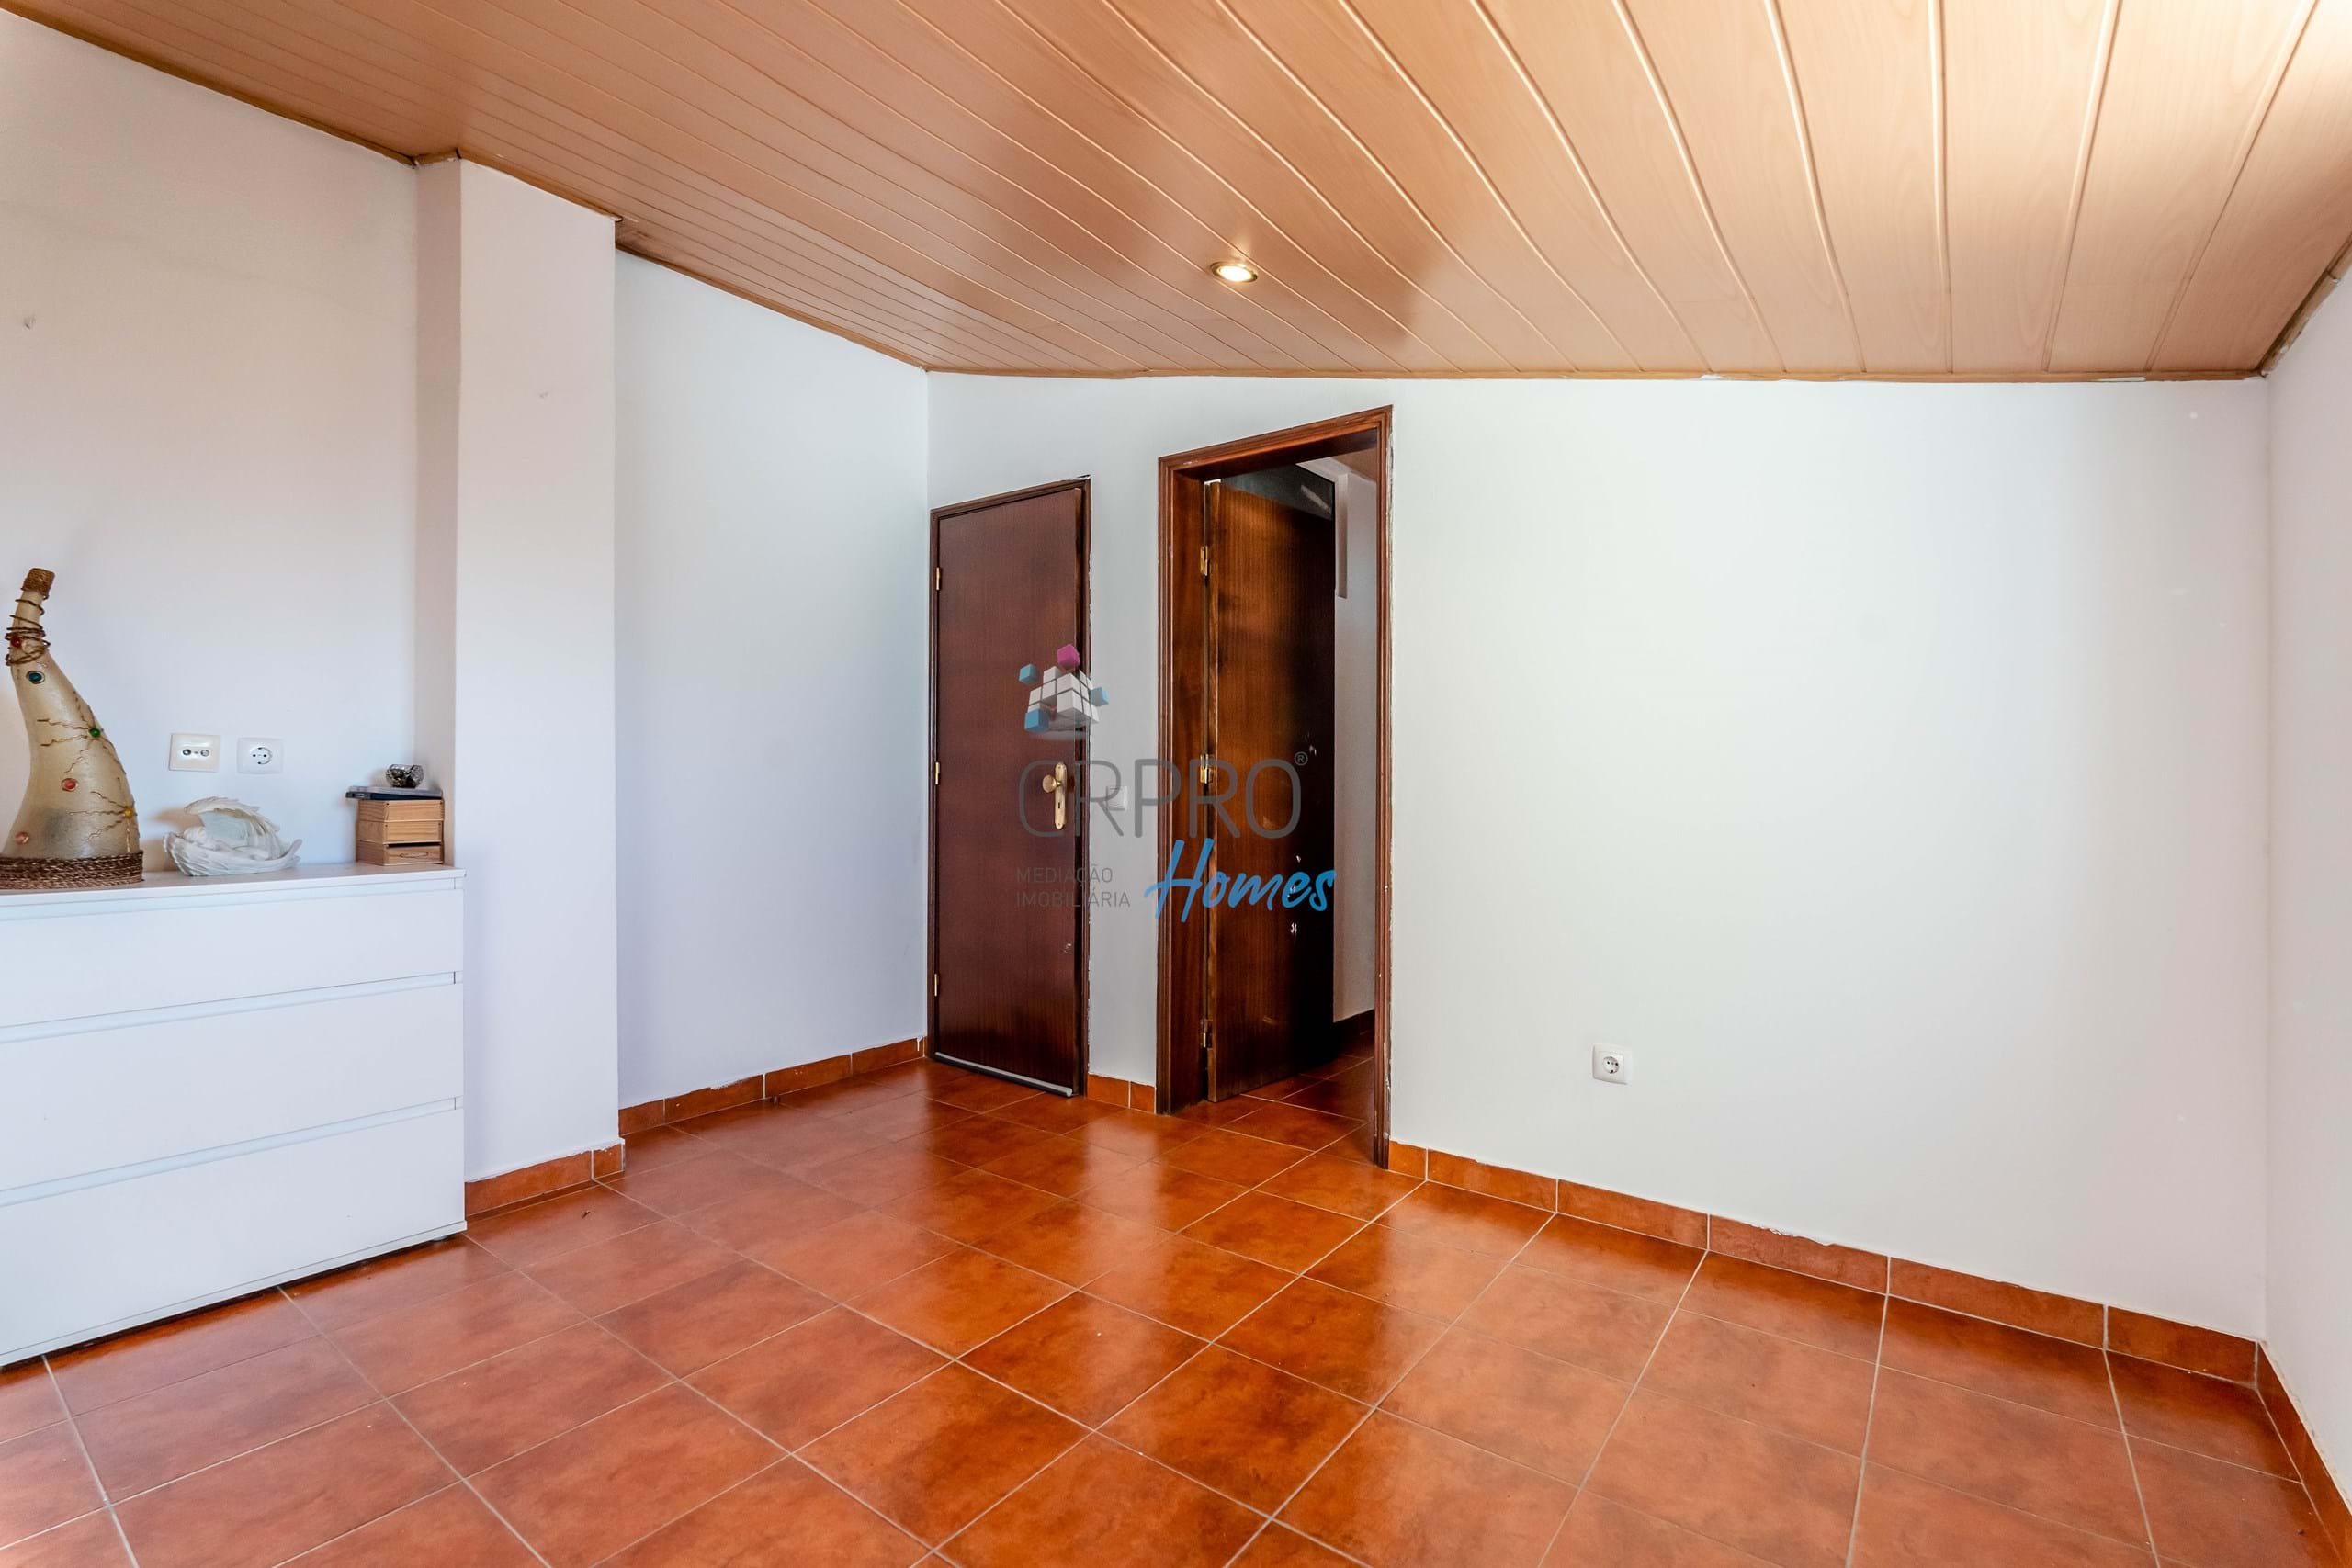 Maison T2+2 à vendre, située dans l'urbanisation Caliços à Albufeira. 